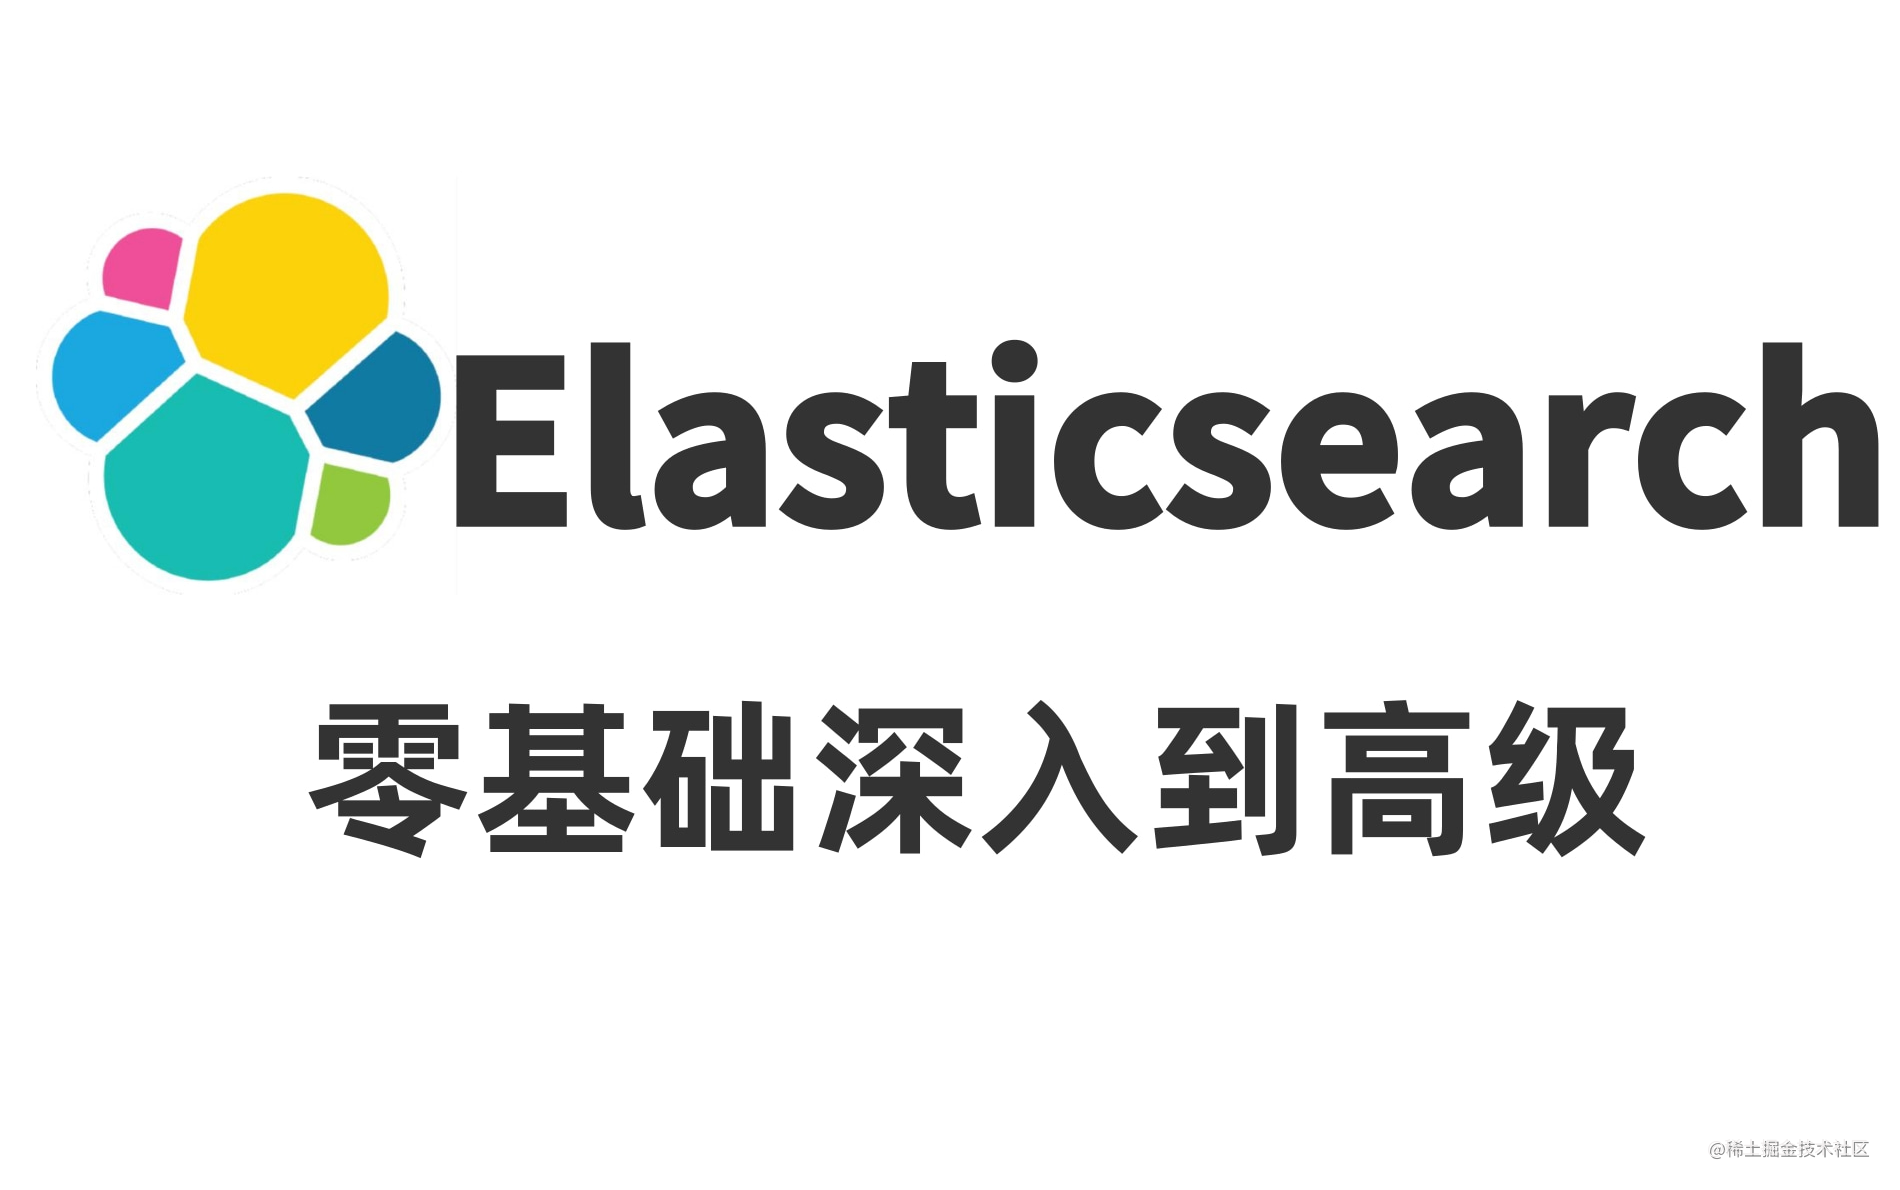 Elasticsearch分布式搜索引擎